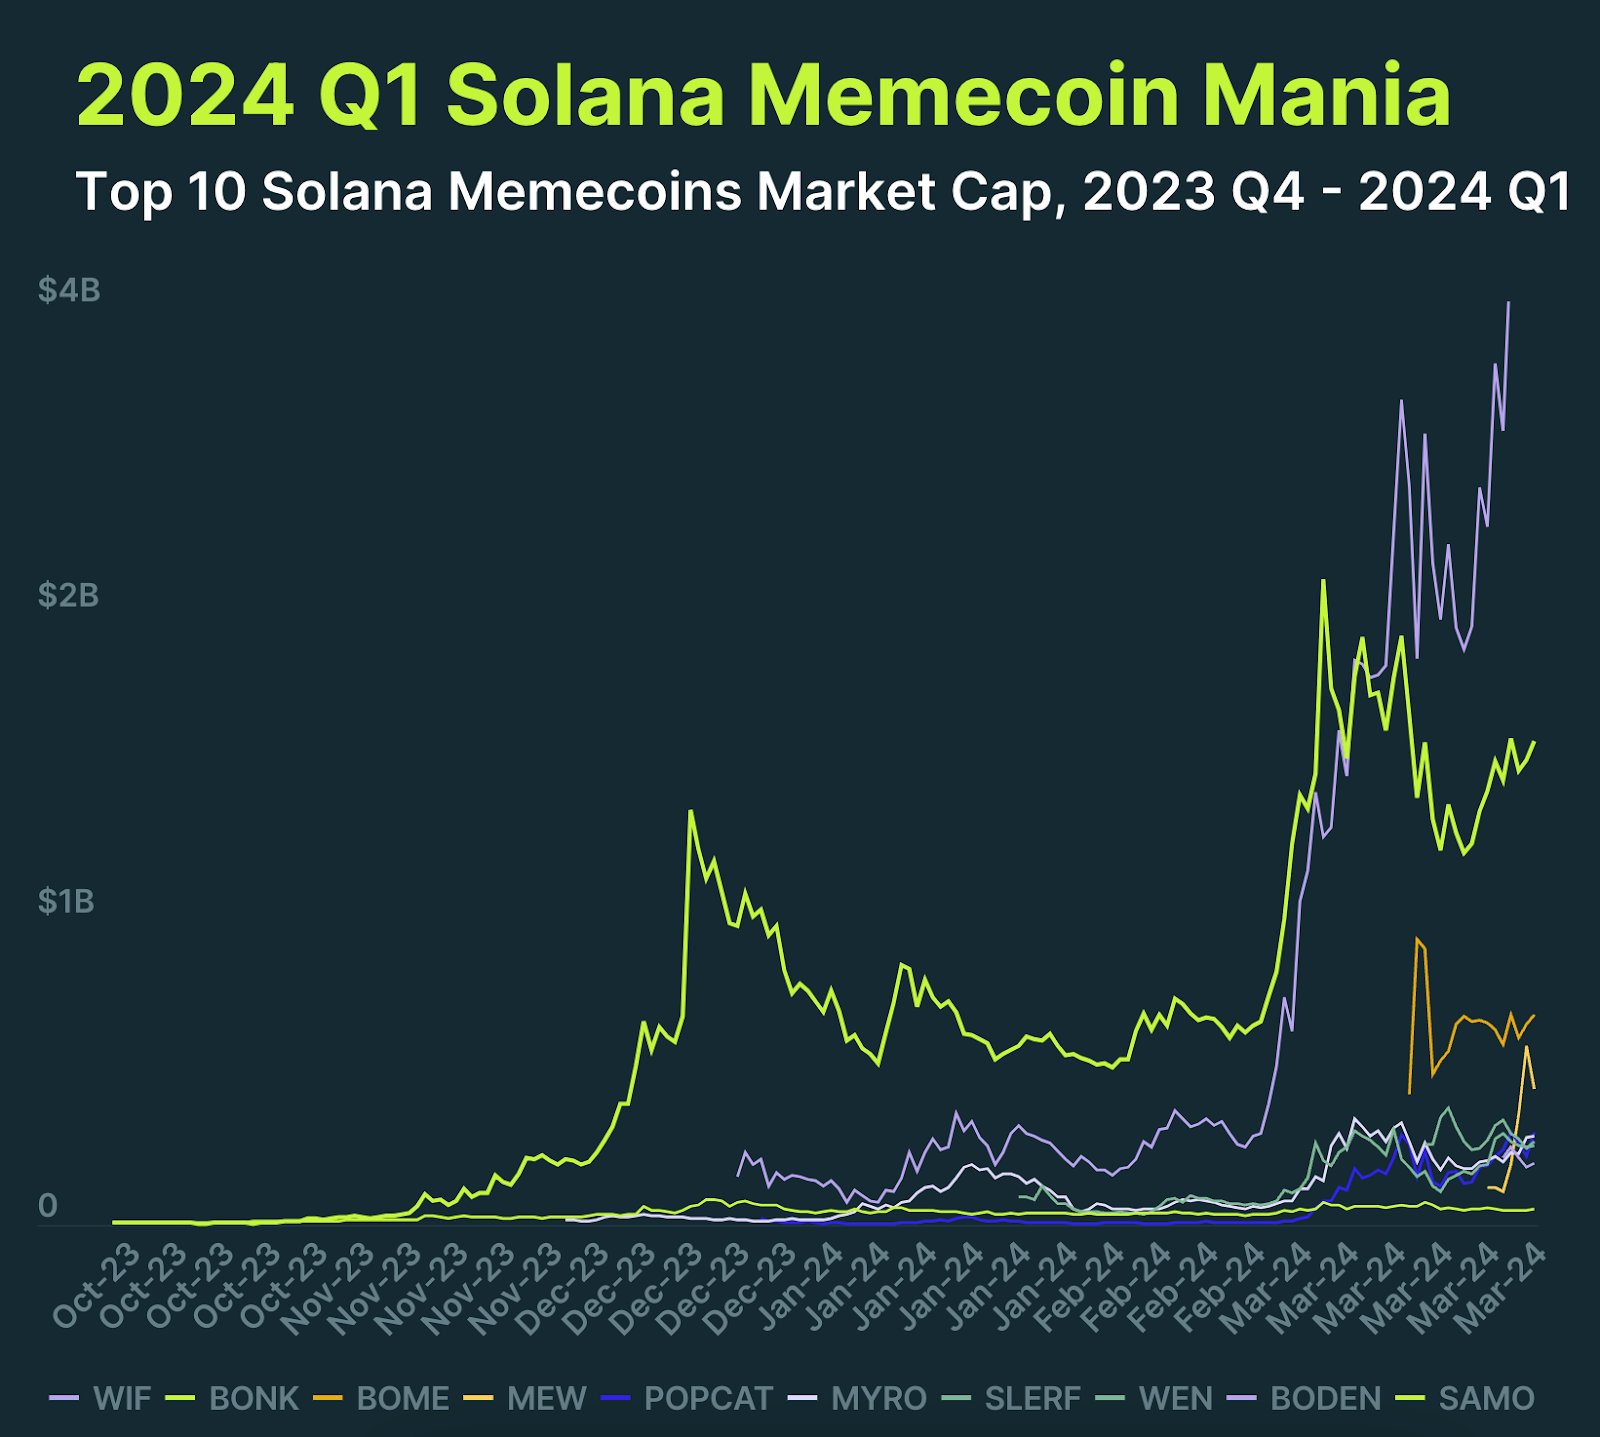 10 największych memcoinów w sieci Solana pod względem kapitalizacji rynkowej. Dane: Coingecko.